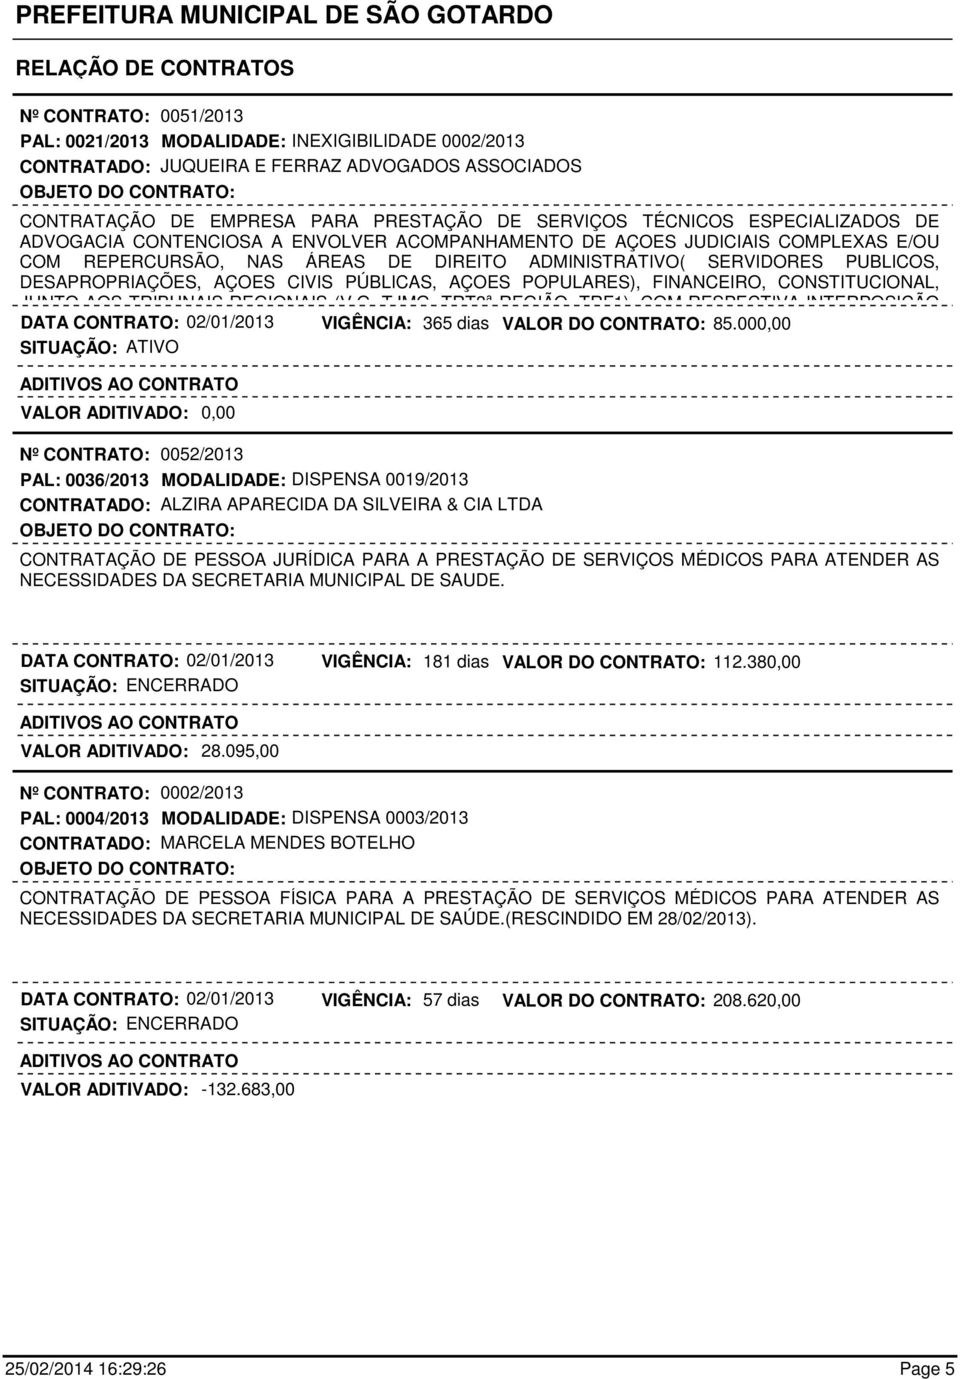 CIVIS PÚBLICAS, AÇOES POPULARES), FINANCEIRO, CONSTITUCIONAL, JUNTO AOS TRIBUNAIS REGIONAIS (V.G, TJMG, TRT3ª REGIÃO, TRF1), COM RESPECTIVA INTERPOSIÇÃO DATA CONTRATO: 02/01/2013 365 dias 85.